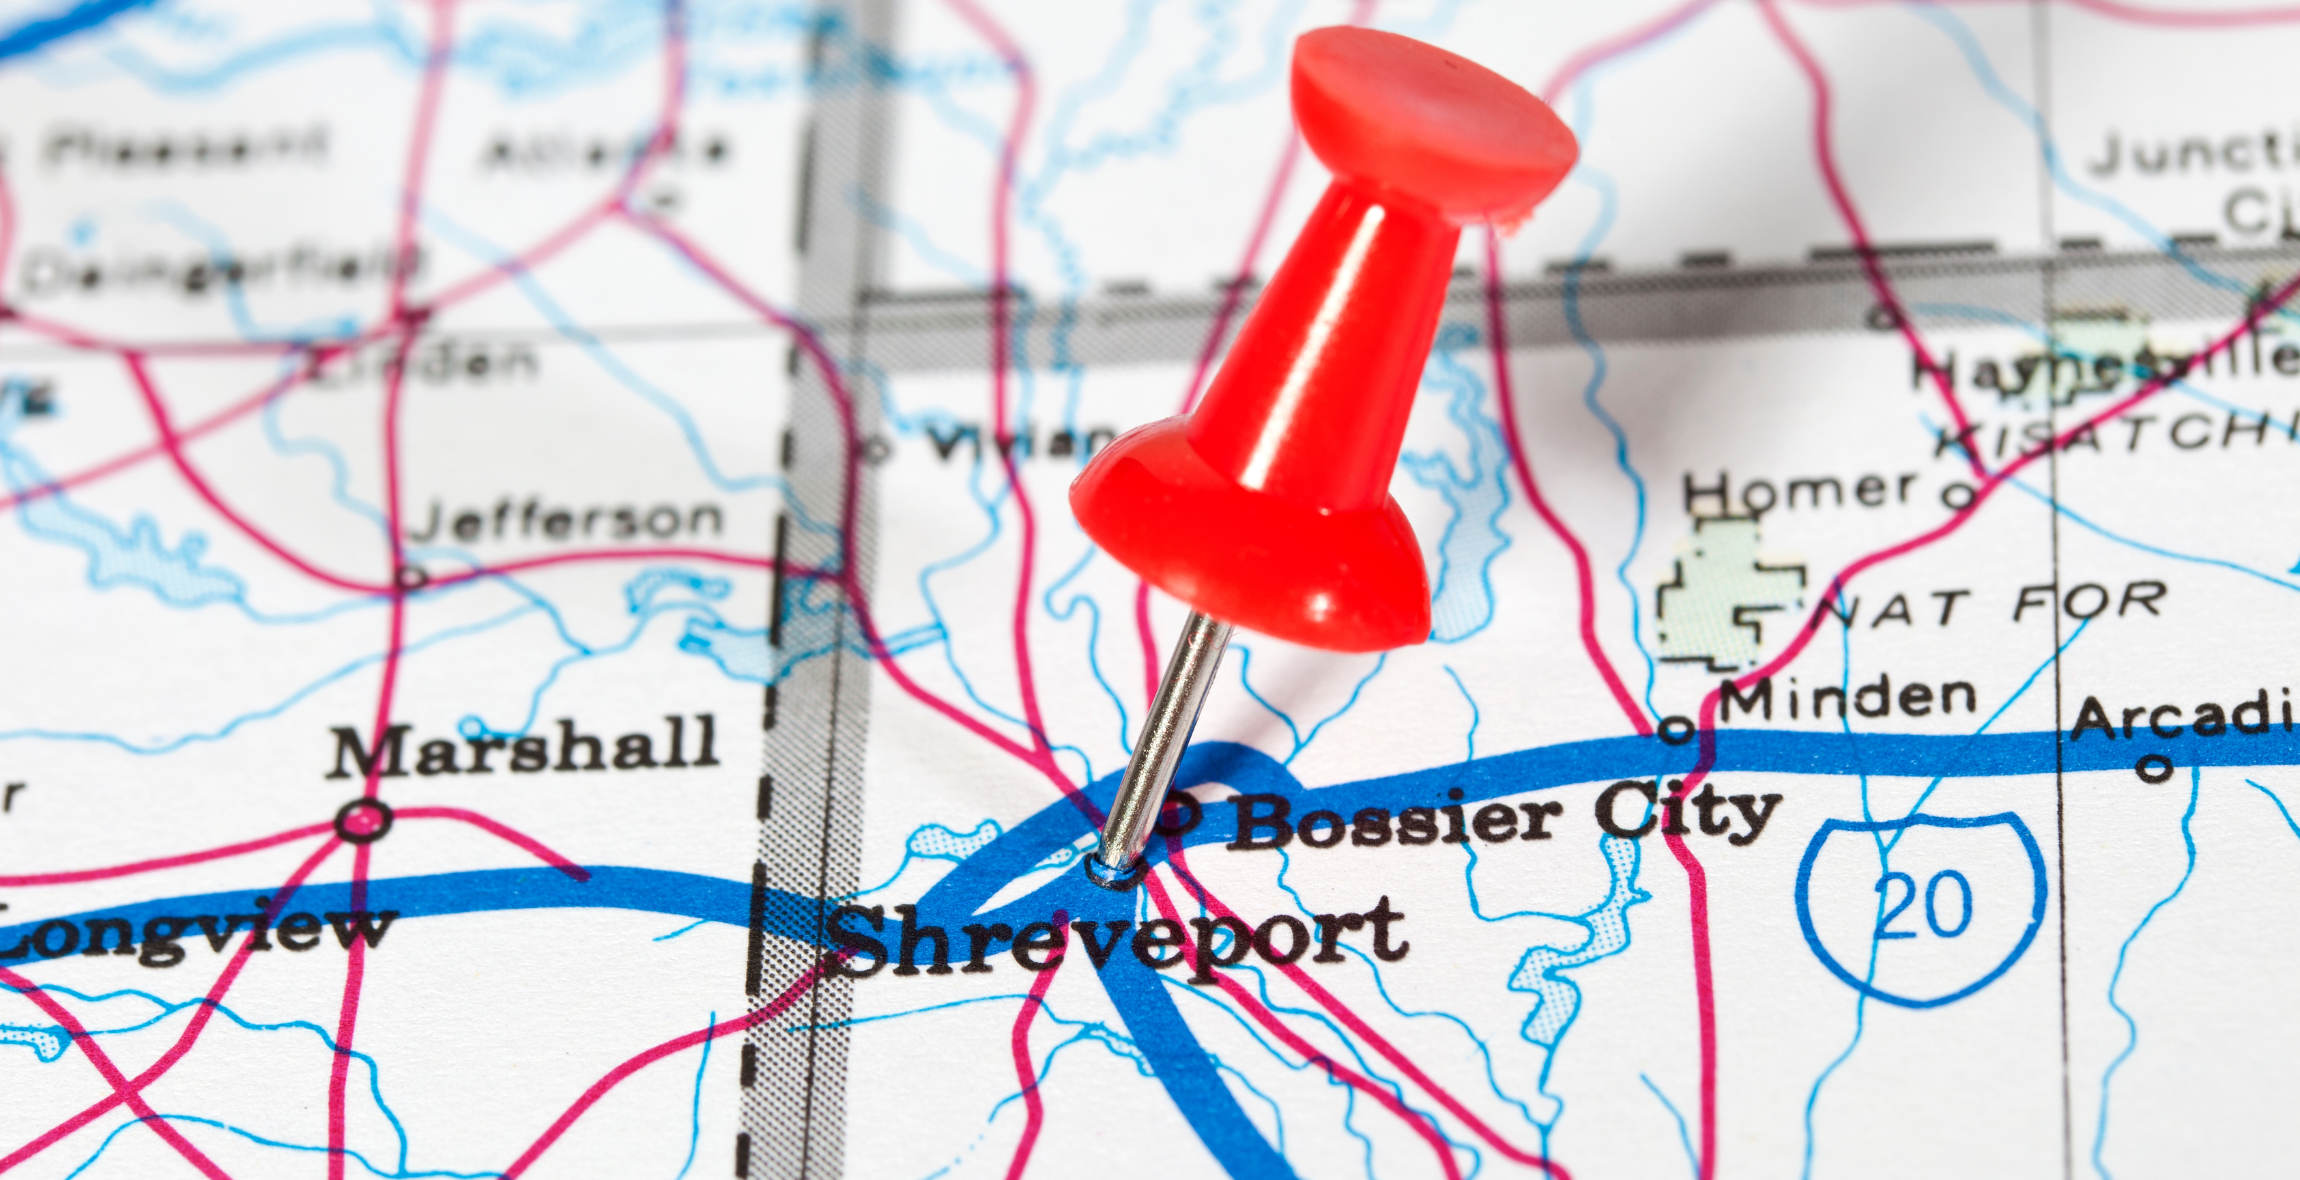 Pushpin marking Shreveport on a map of Louisiana